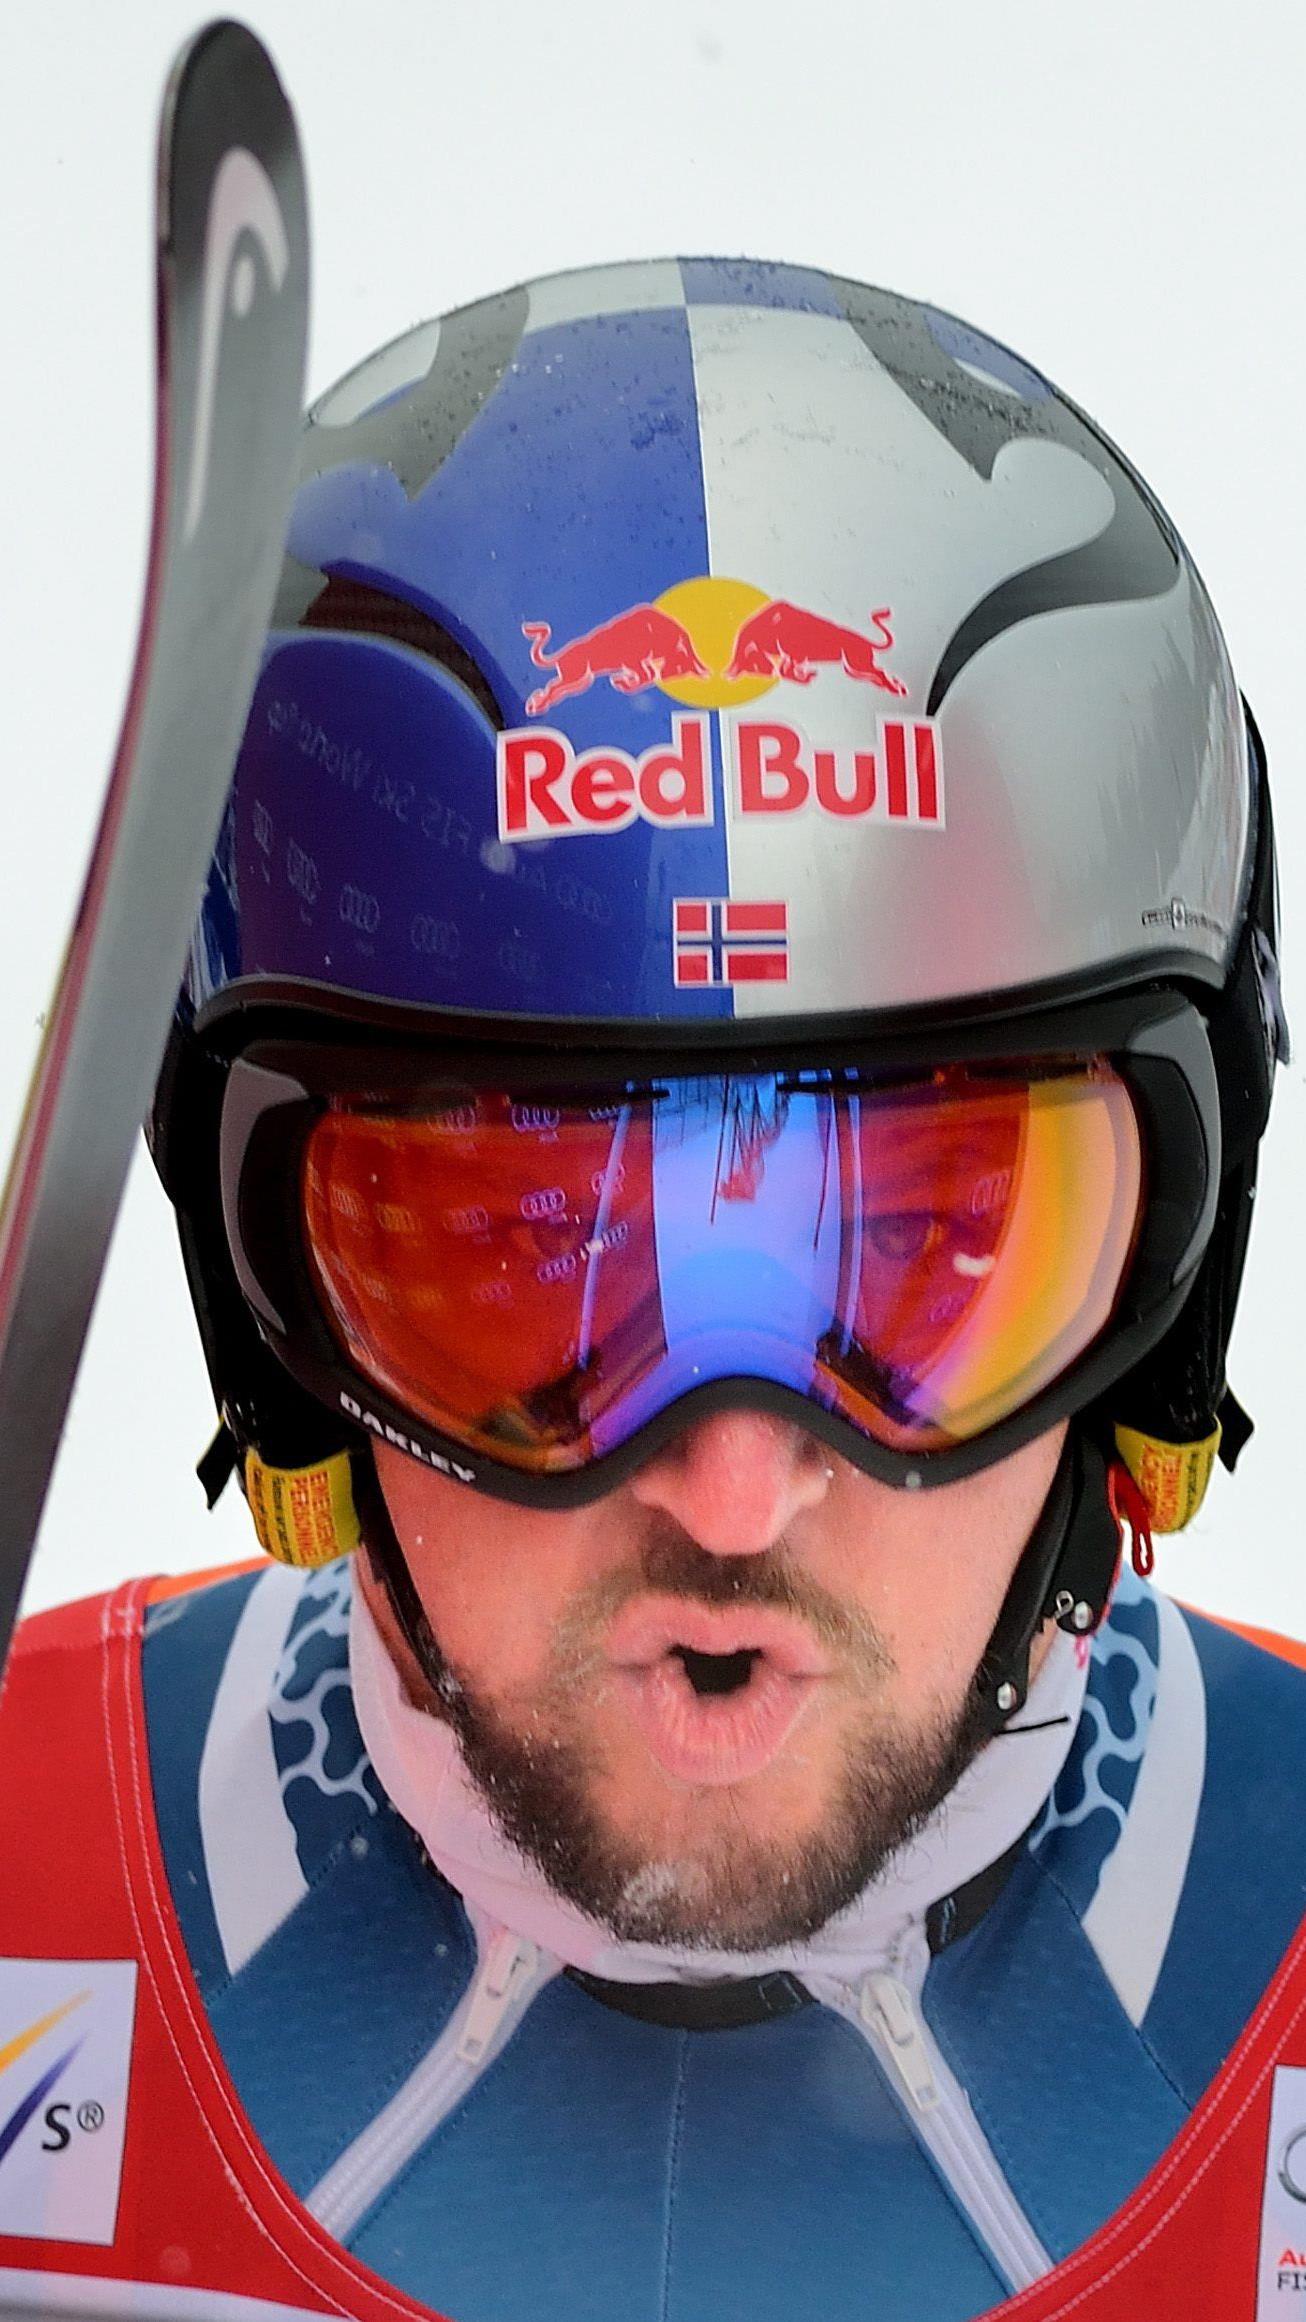 Der Norweger Aksel Lund Svindal geht als Topfavorit an den Start.